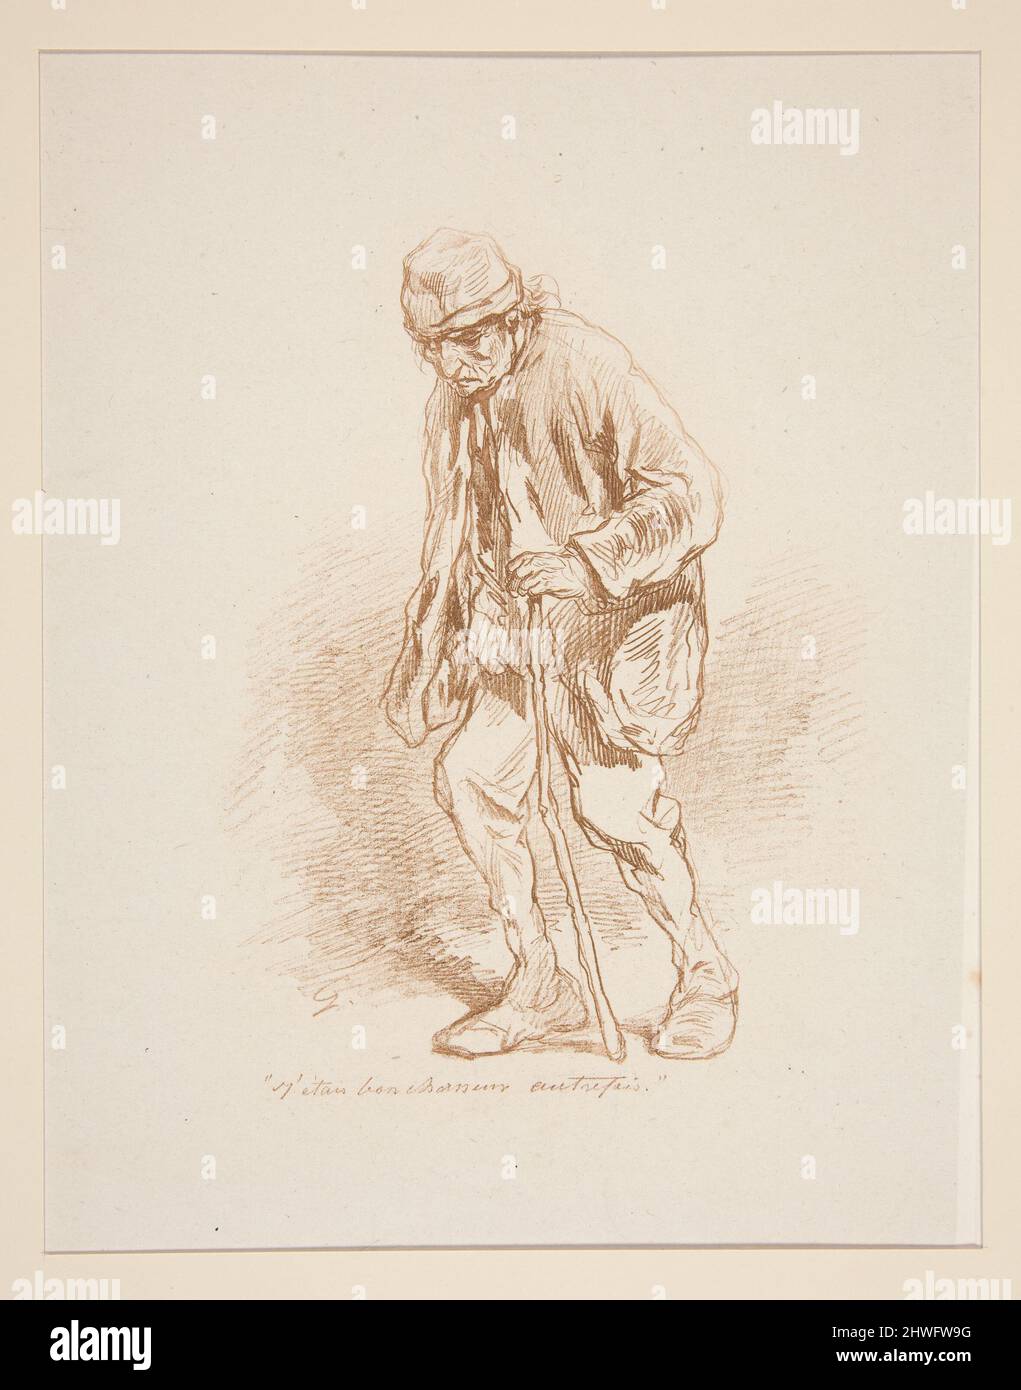 “J’etais bon chasseur autrefois”, …. Artista: Paul Gavarni, francese, 1804–1866 Foto Stock